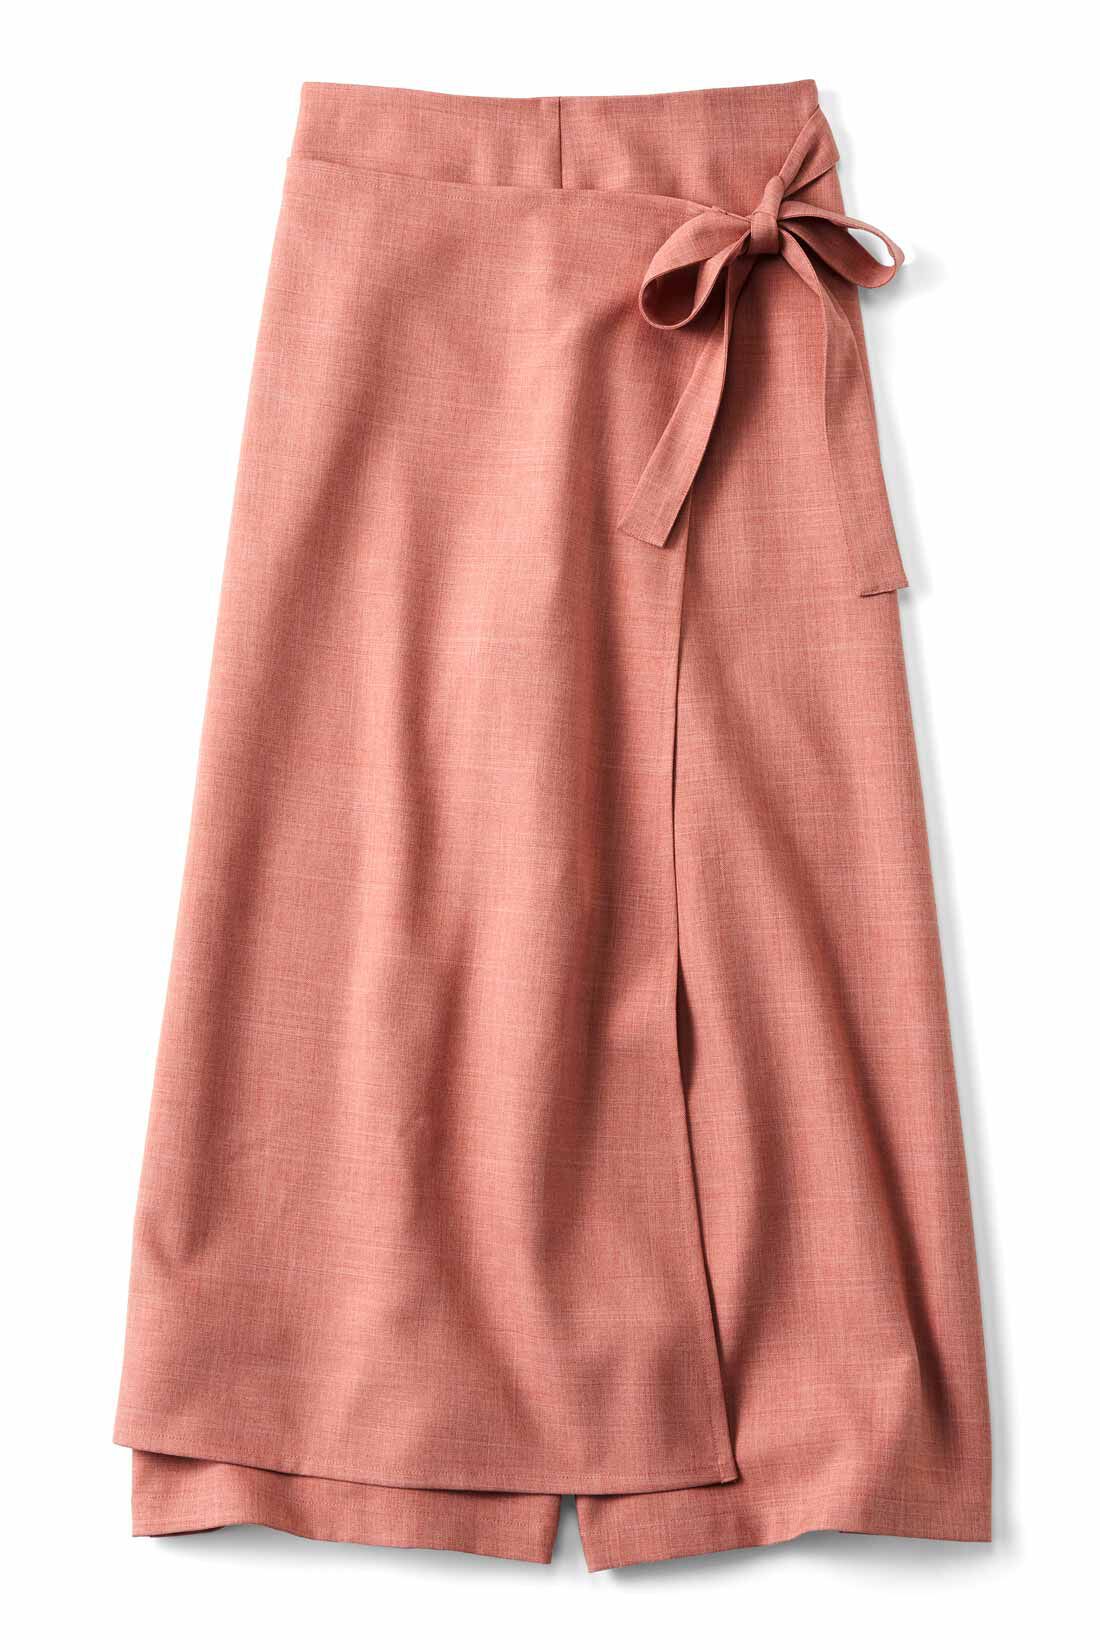 Real Stock|スカート見え ラップパンツ〈フラミンゴ〉|シャリッとした素材なのですっきり見えます。